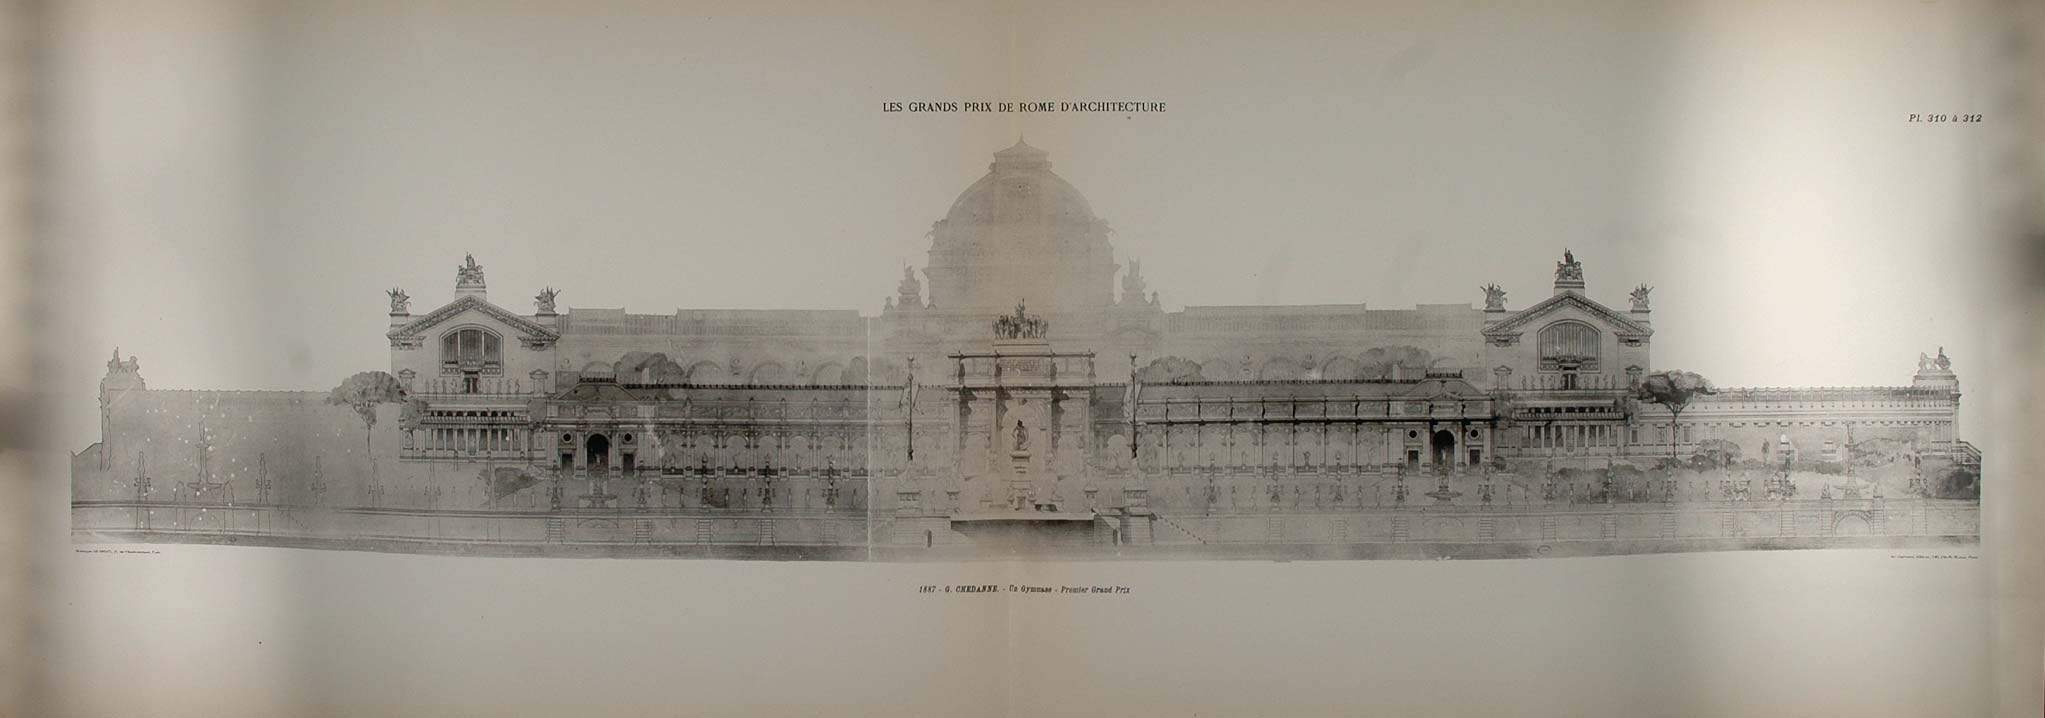 1902 Print 1887 Prix de Rome Chedanne Architecture Gym - ORIGINAL ARCH7